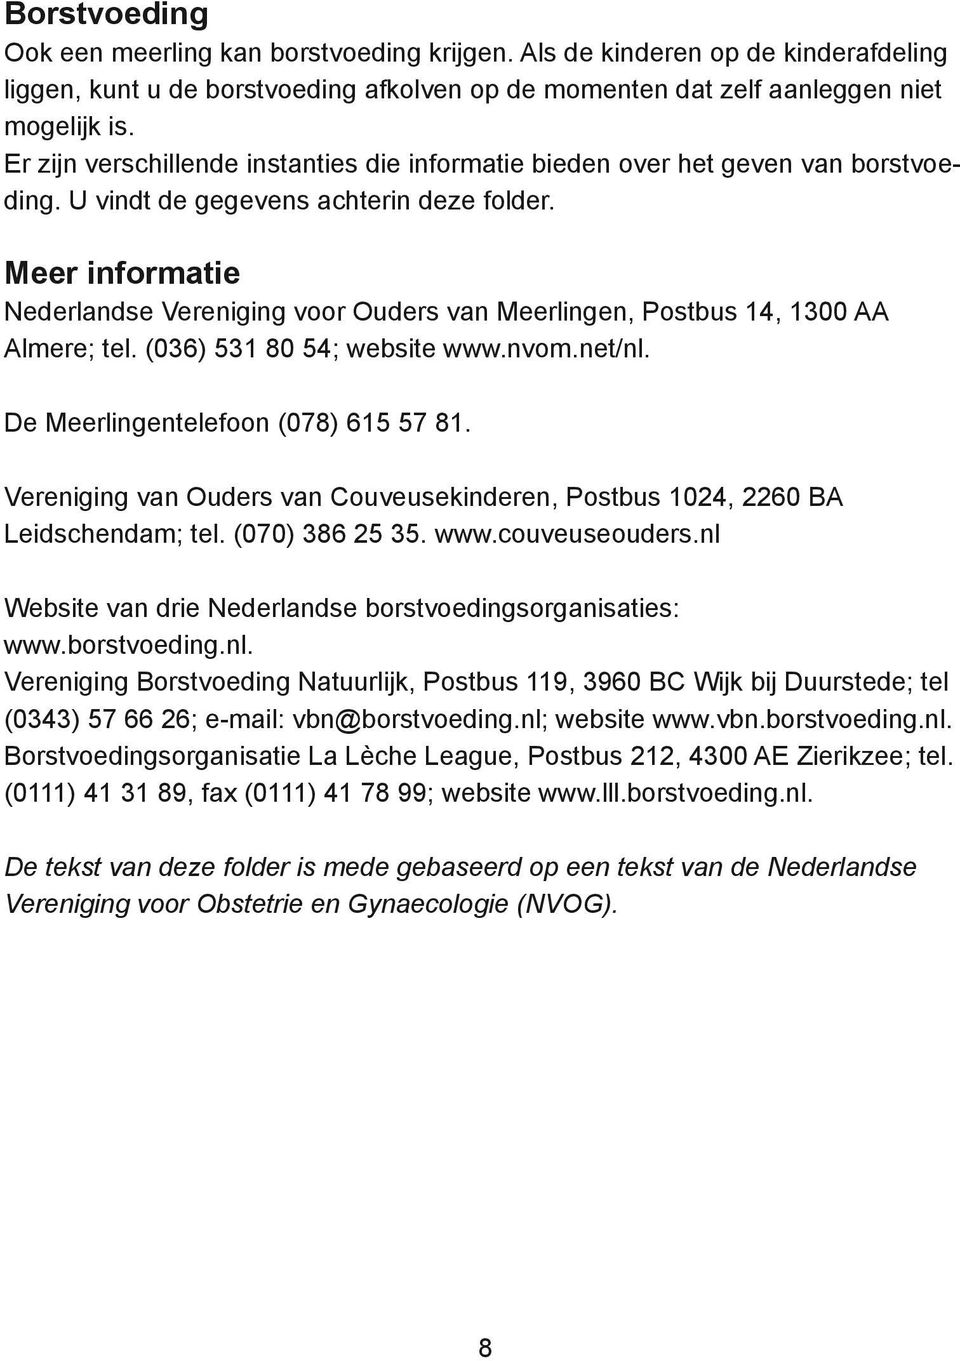 Meer informatie Nederlandse Vereniging voor Ouders van Meerlingen, Postbus 14, 1300 AA Almere; tel. (036) 531 80 54; website www.nvom.net/nl. De Meerlingentelefoon (078) 615 57 81.